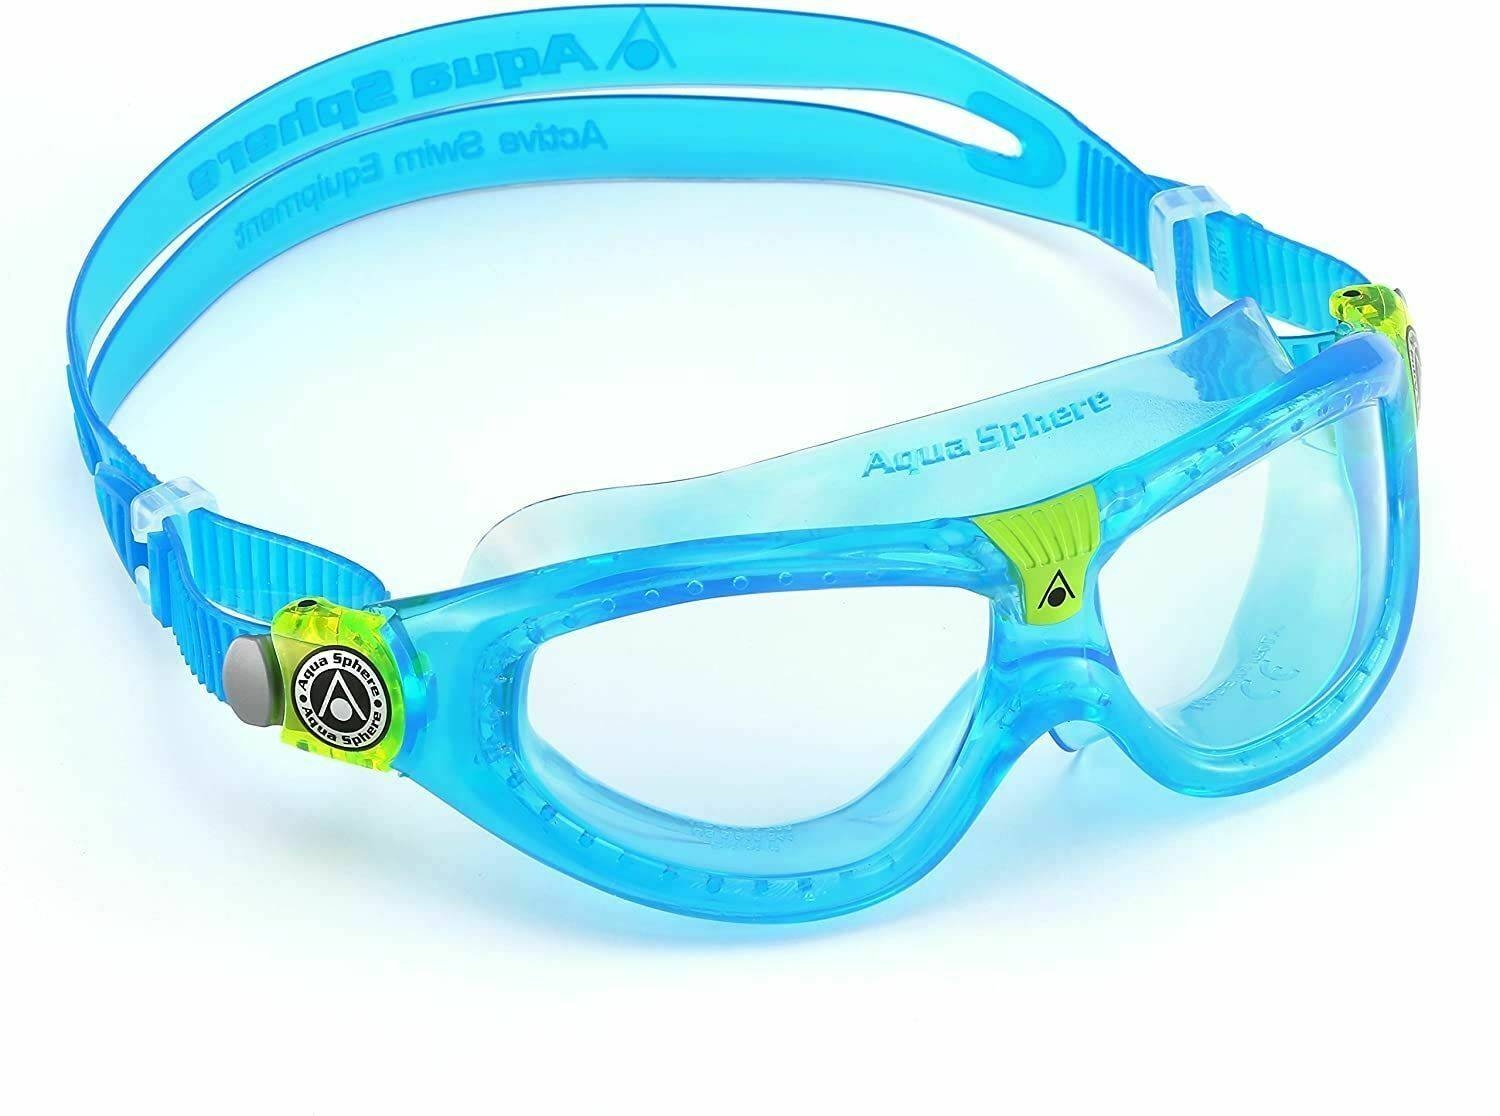 Zdjęcia - Okulary przeciwsłoneczne Aqua Sphere Aquasphere okulary Seal Kid2 jasne szkła MS4454343 LC turquois 